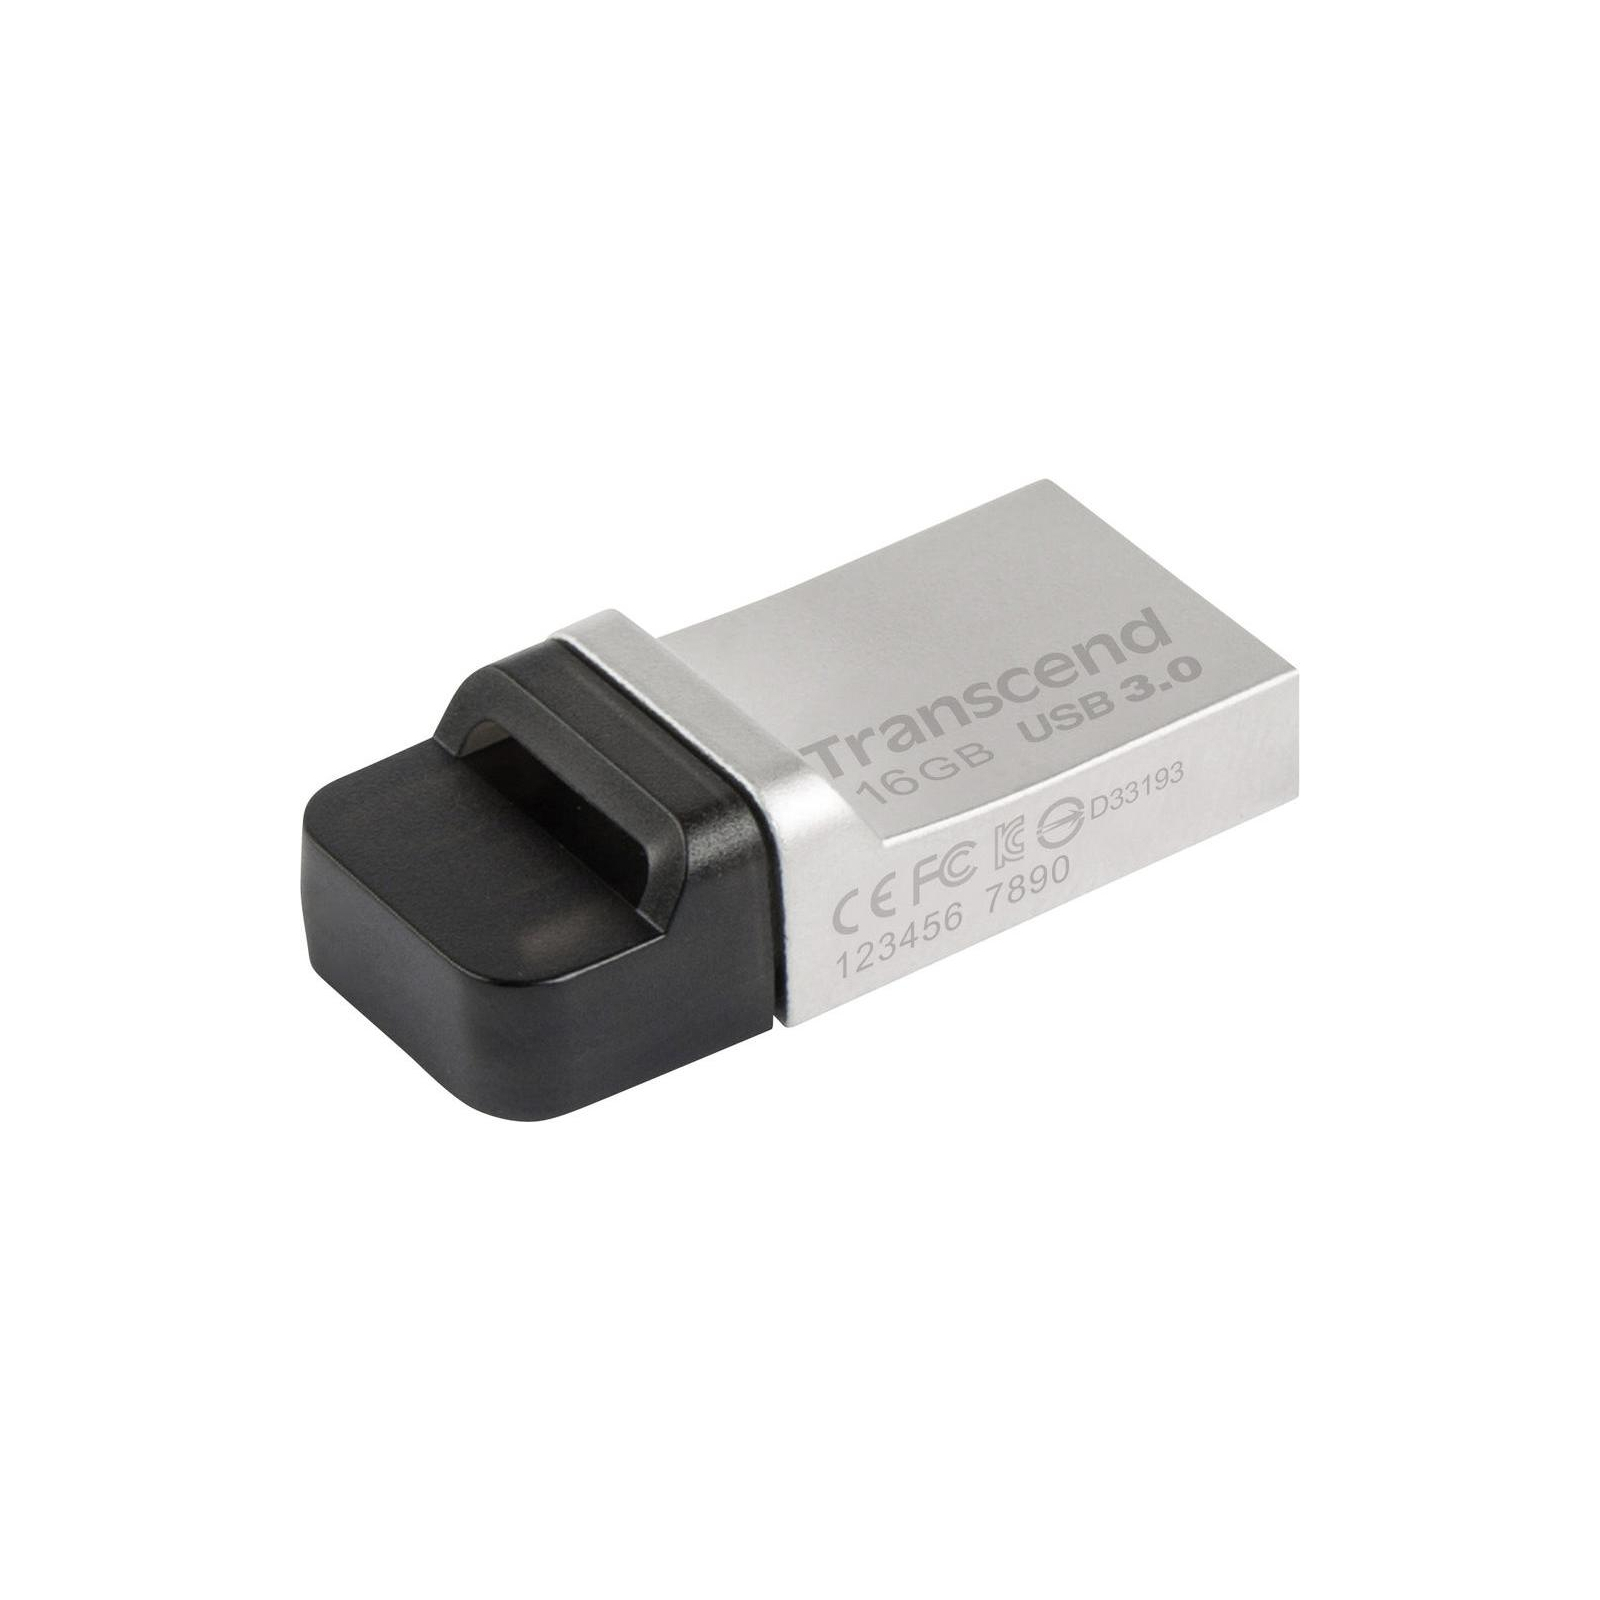 USB флеш накопичувач Transcend 16GB JetFlash OTG 880 Metal Silver USB 3.0 (TS16GJF880S)